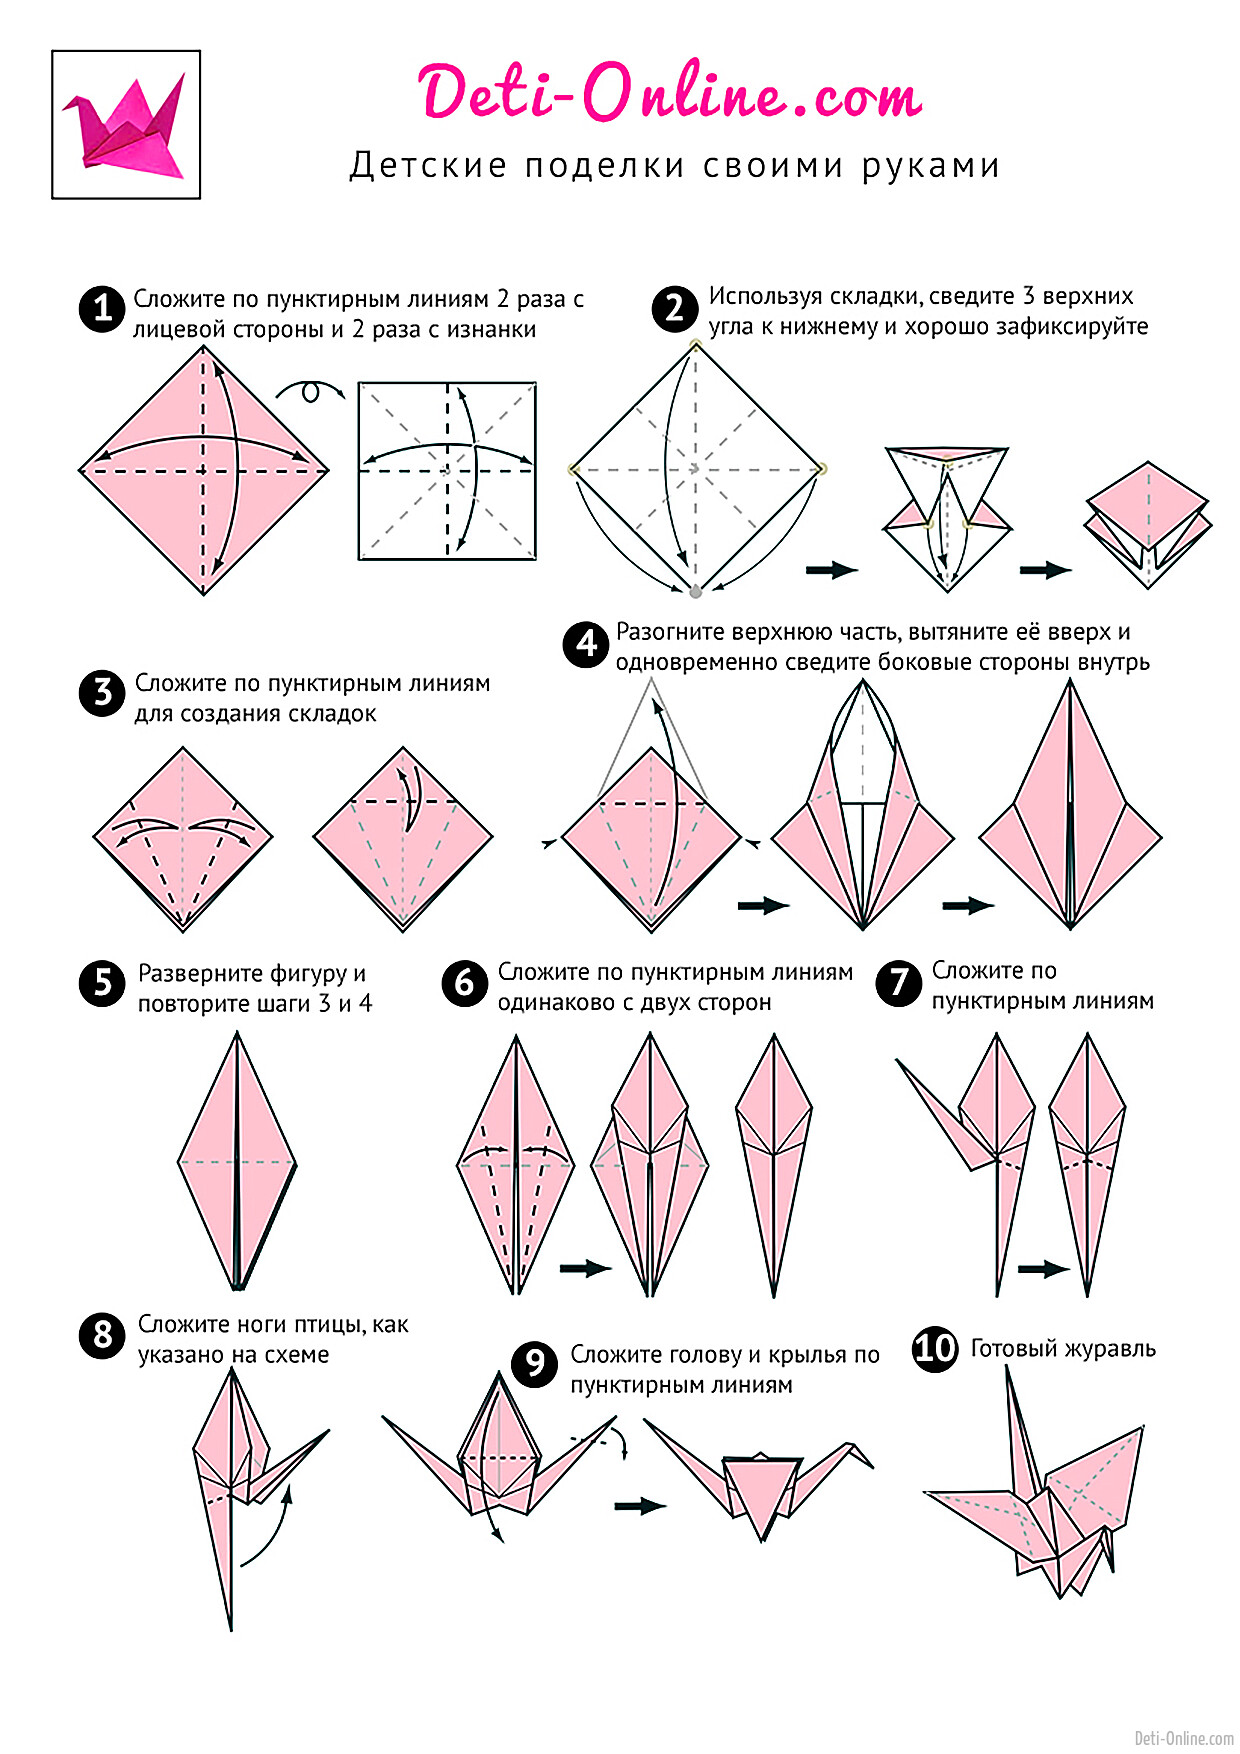 Оригами журавль простой. Журавлик из бумаги схема складывания. Как сделать журавлика из бумаги. Схема журавлика оригами простая для детей. Как сделать журавлика из бумаги пошаговая инструкция.